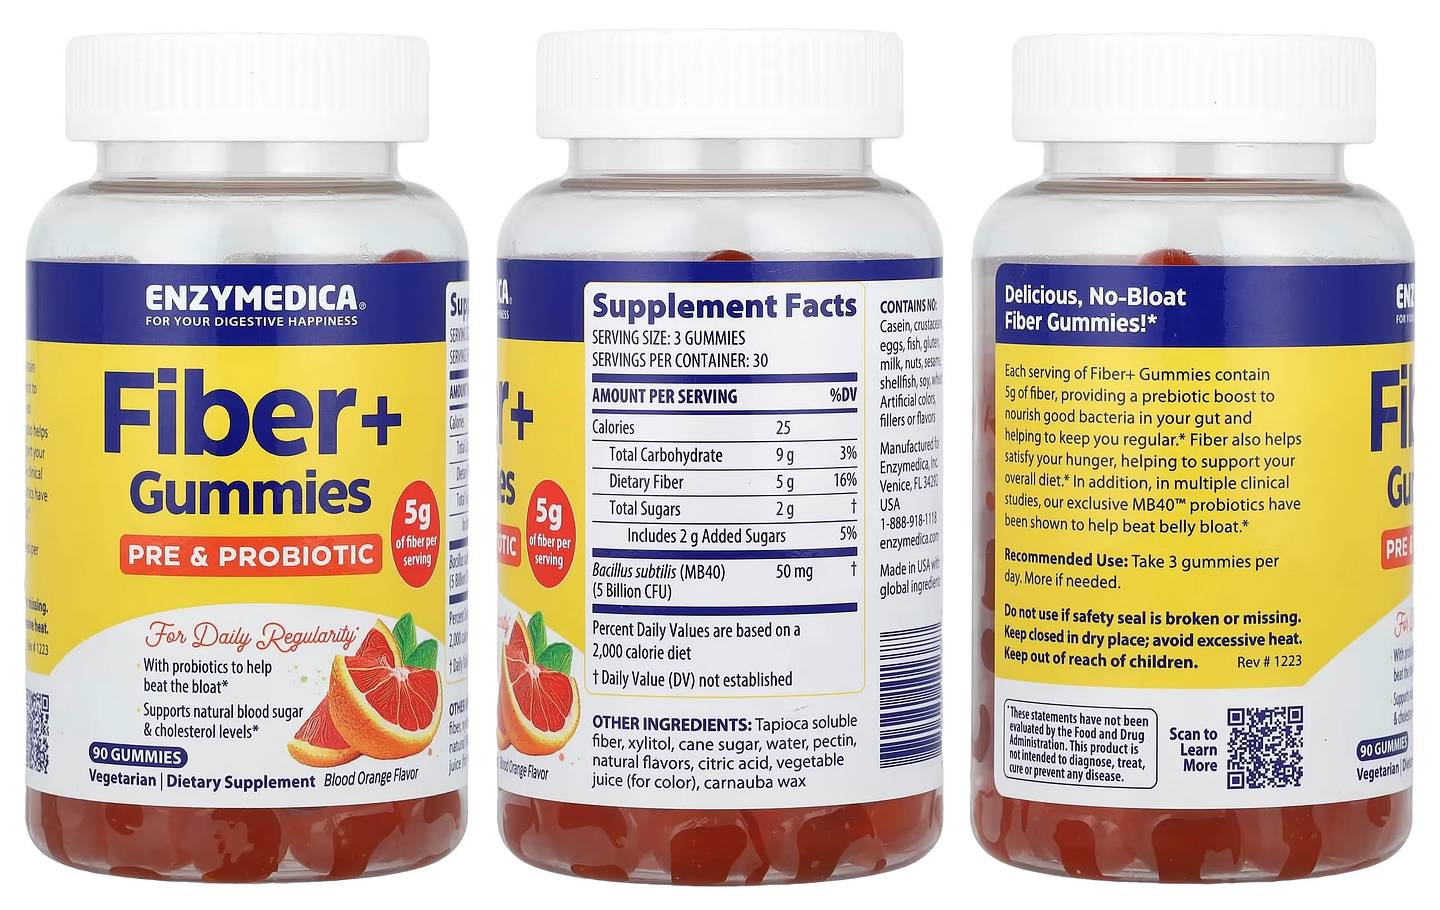 Enzymedica, Fiber+ Gummies packaging